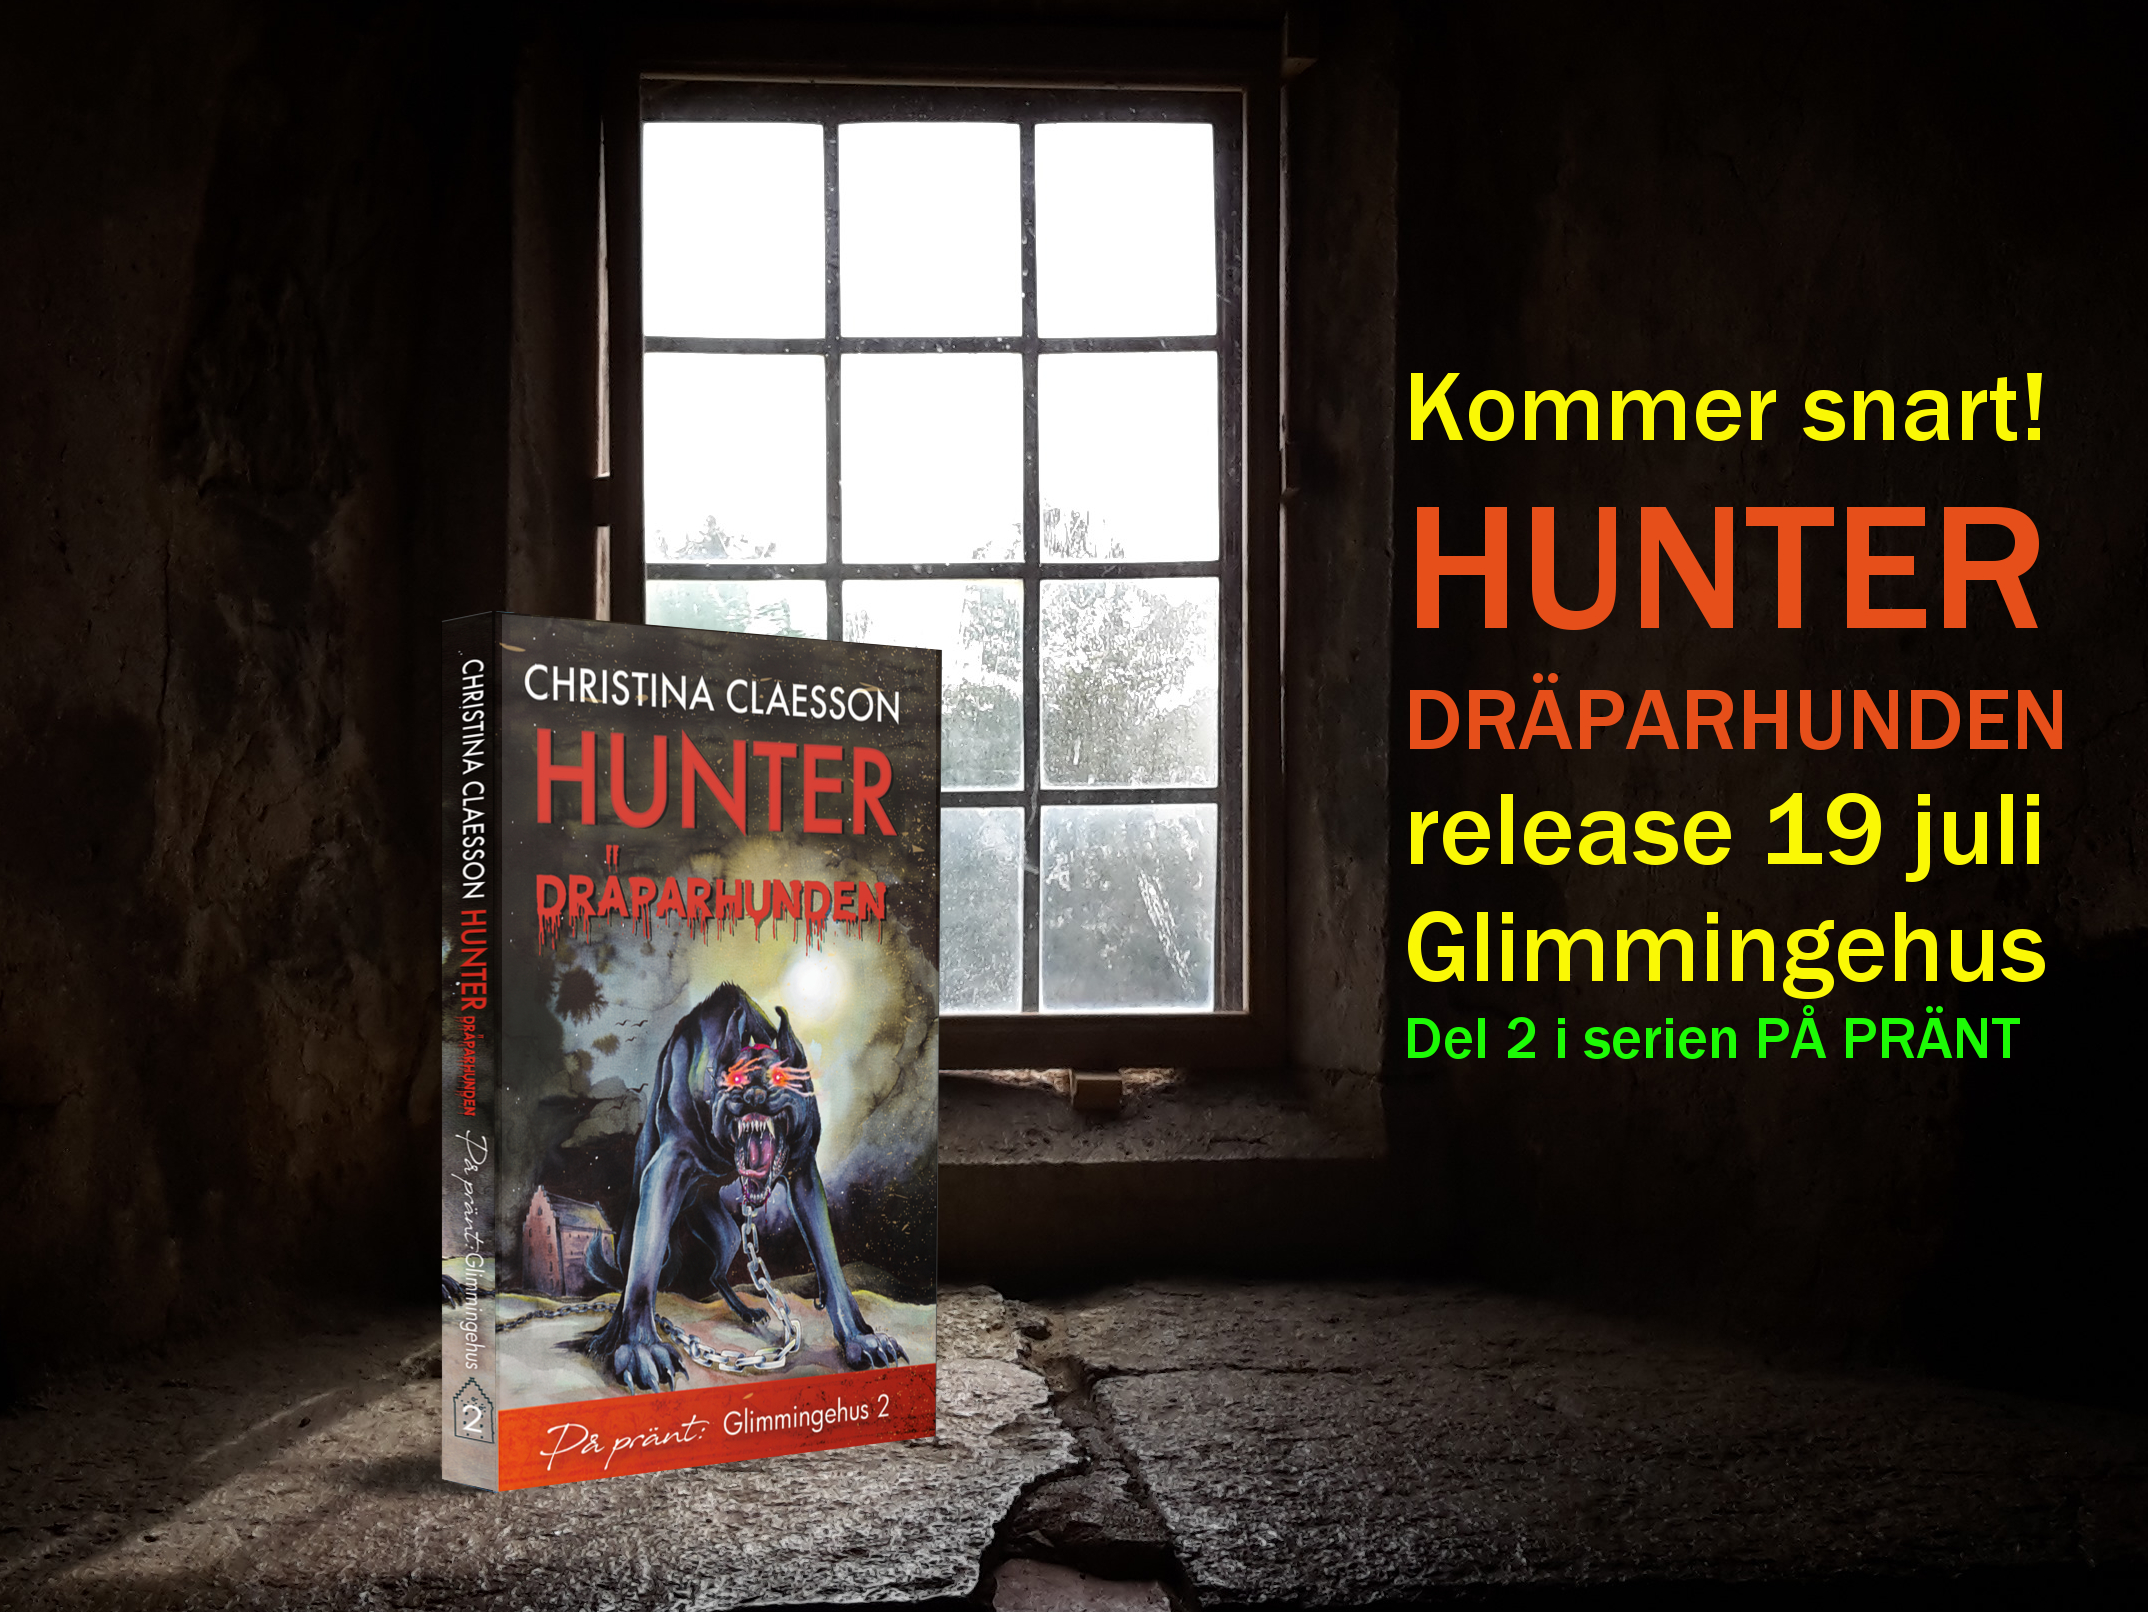 Hunter dräparhunden, utkommer 19 juli med release på Glimmingehus